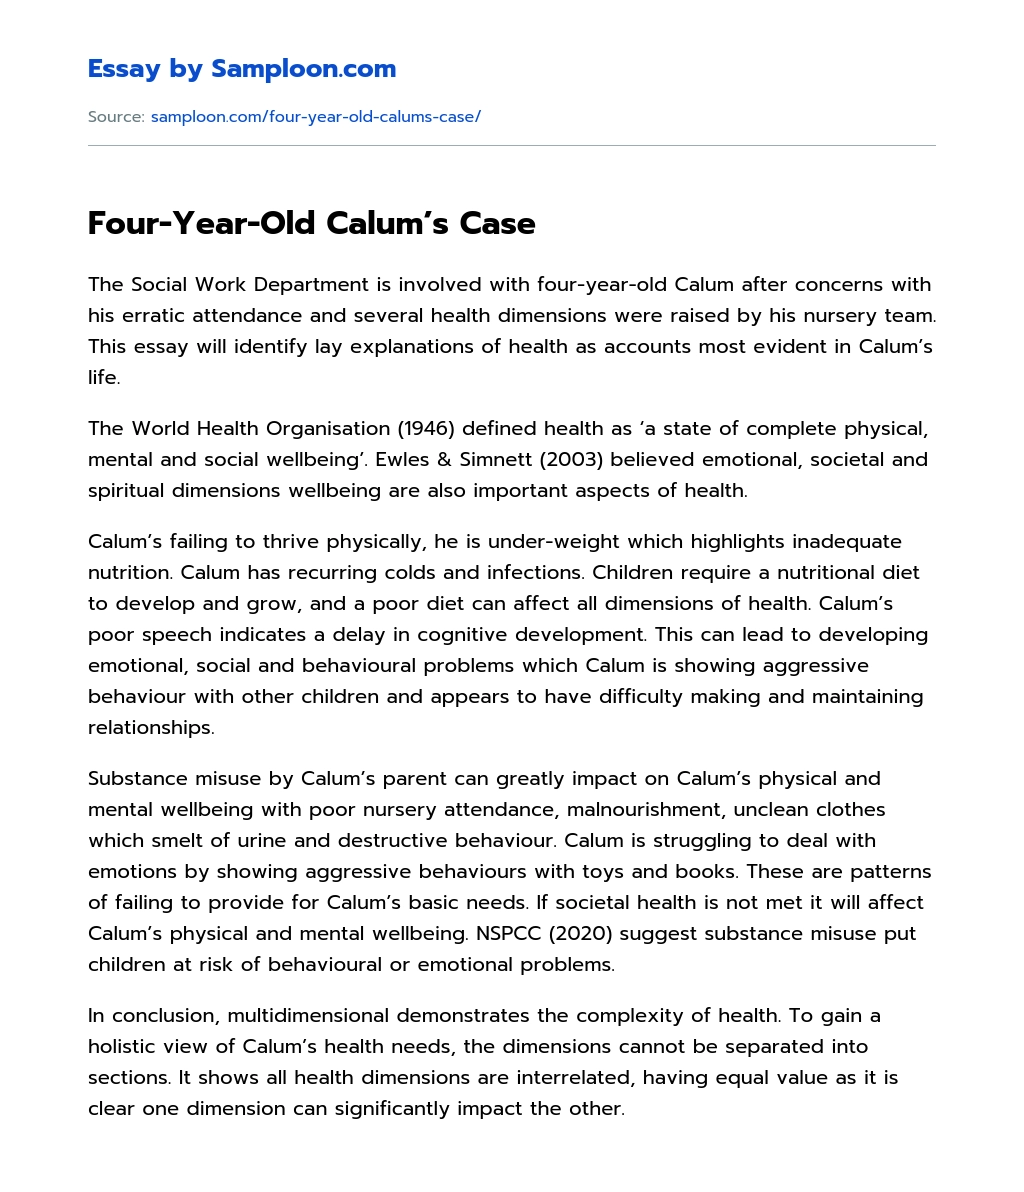 Four-Year-Old Calum’s Case essay